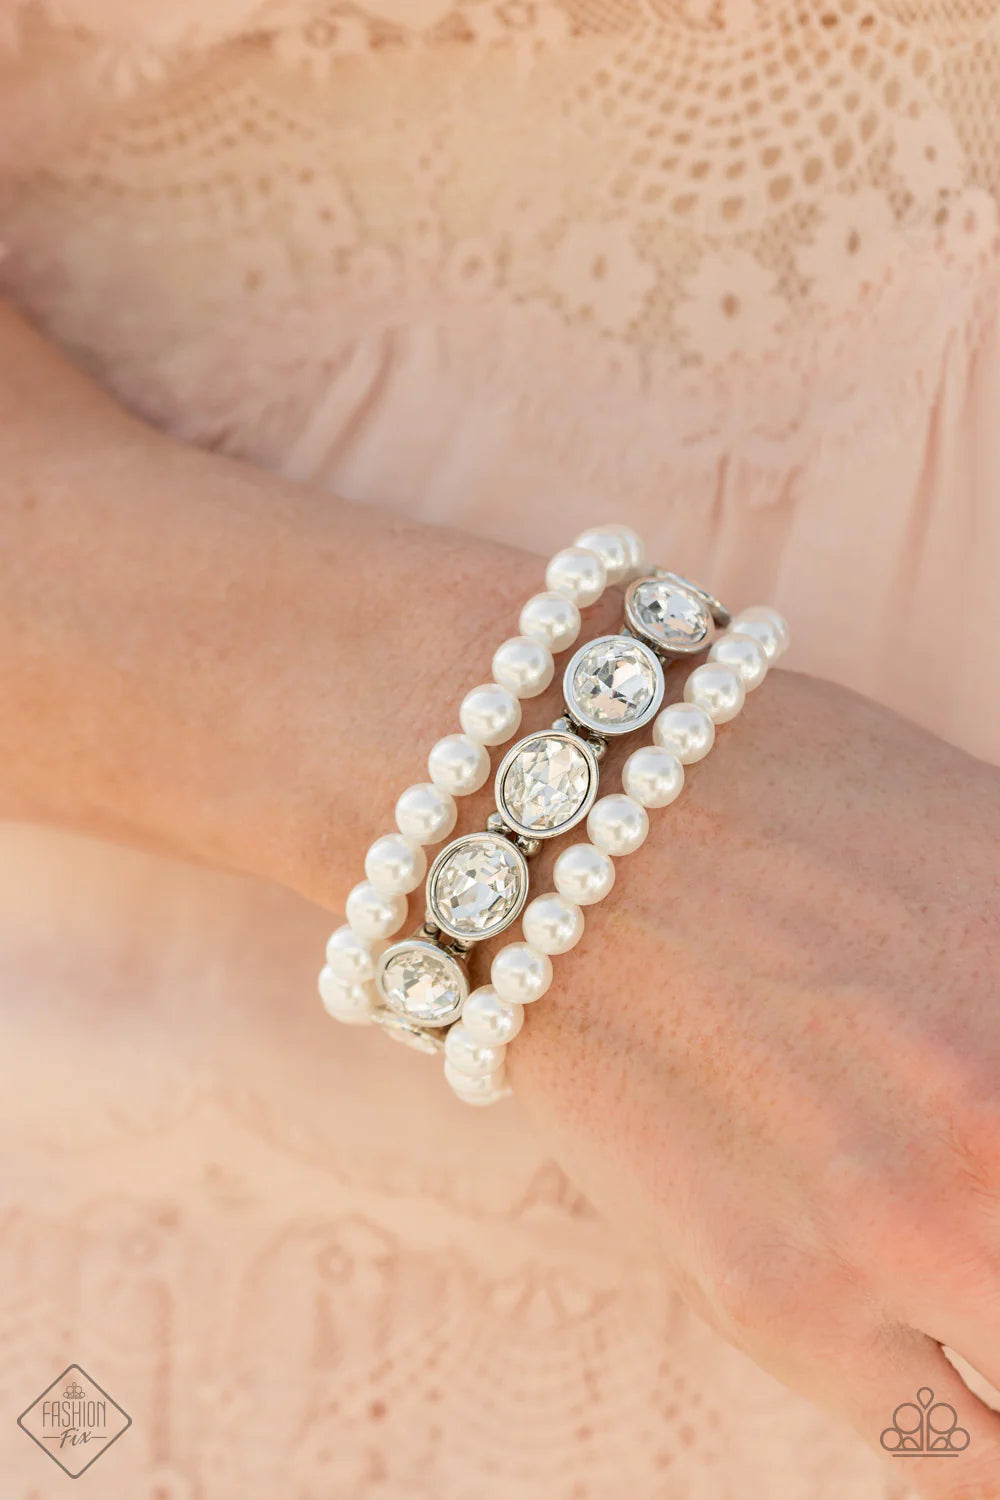 Flawlessly Flattering - White Bracelet